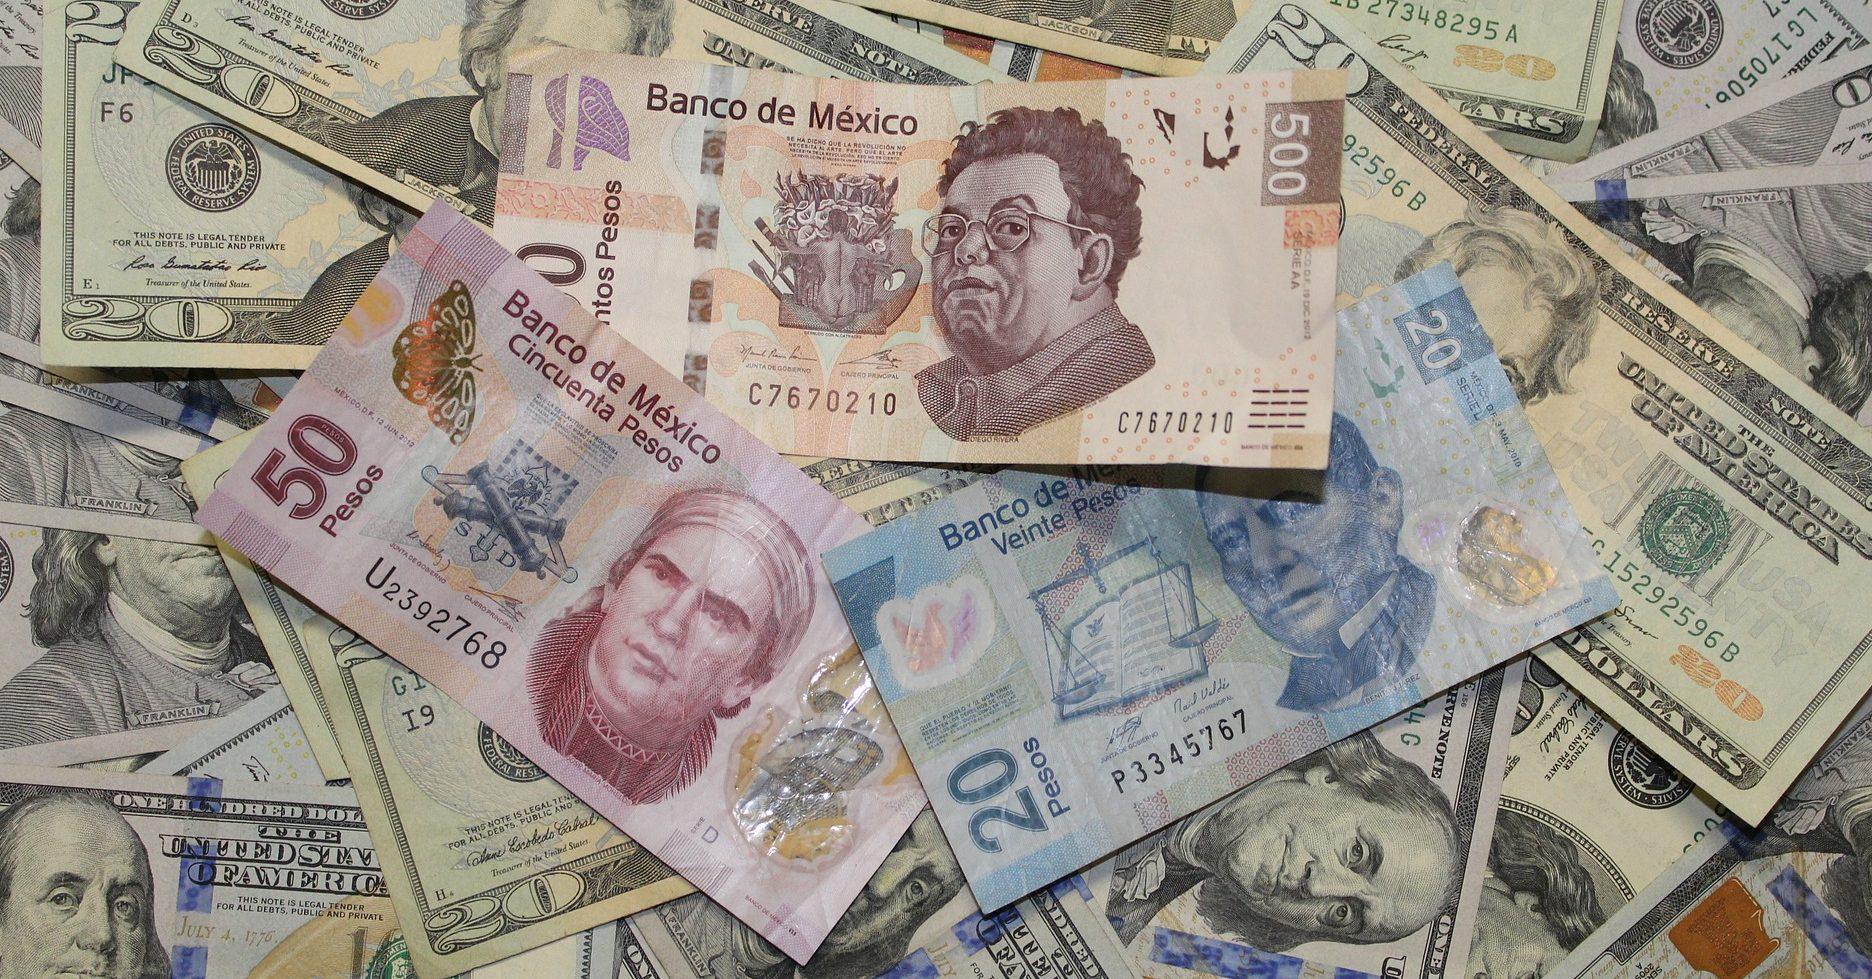 Dólar abre por arriba de los 19.80 pesos luego de la incertidumbre con EU y calificadoras